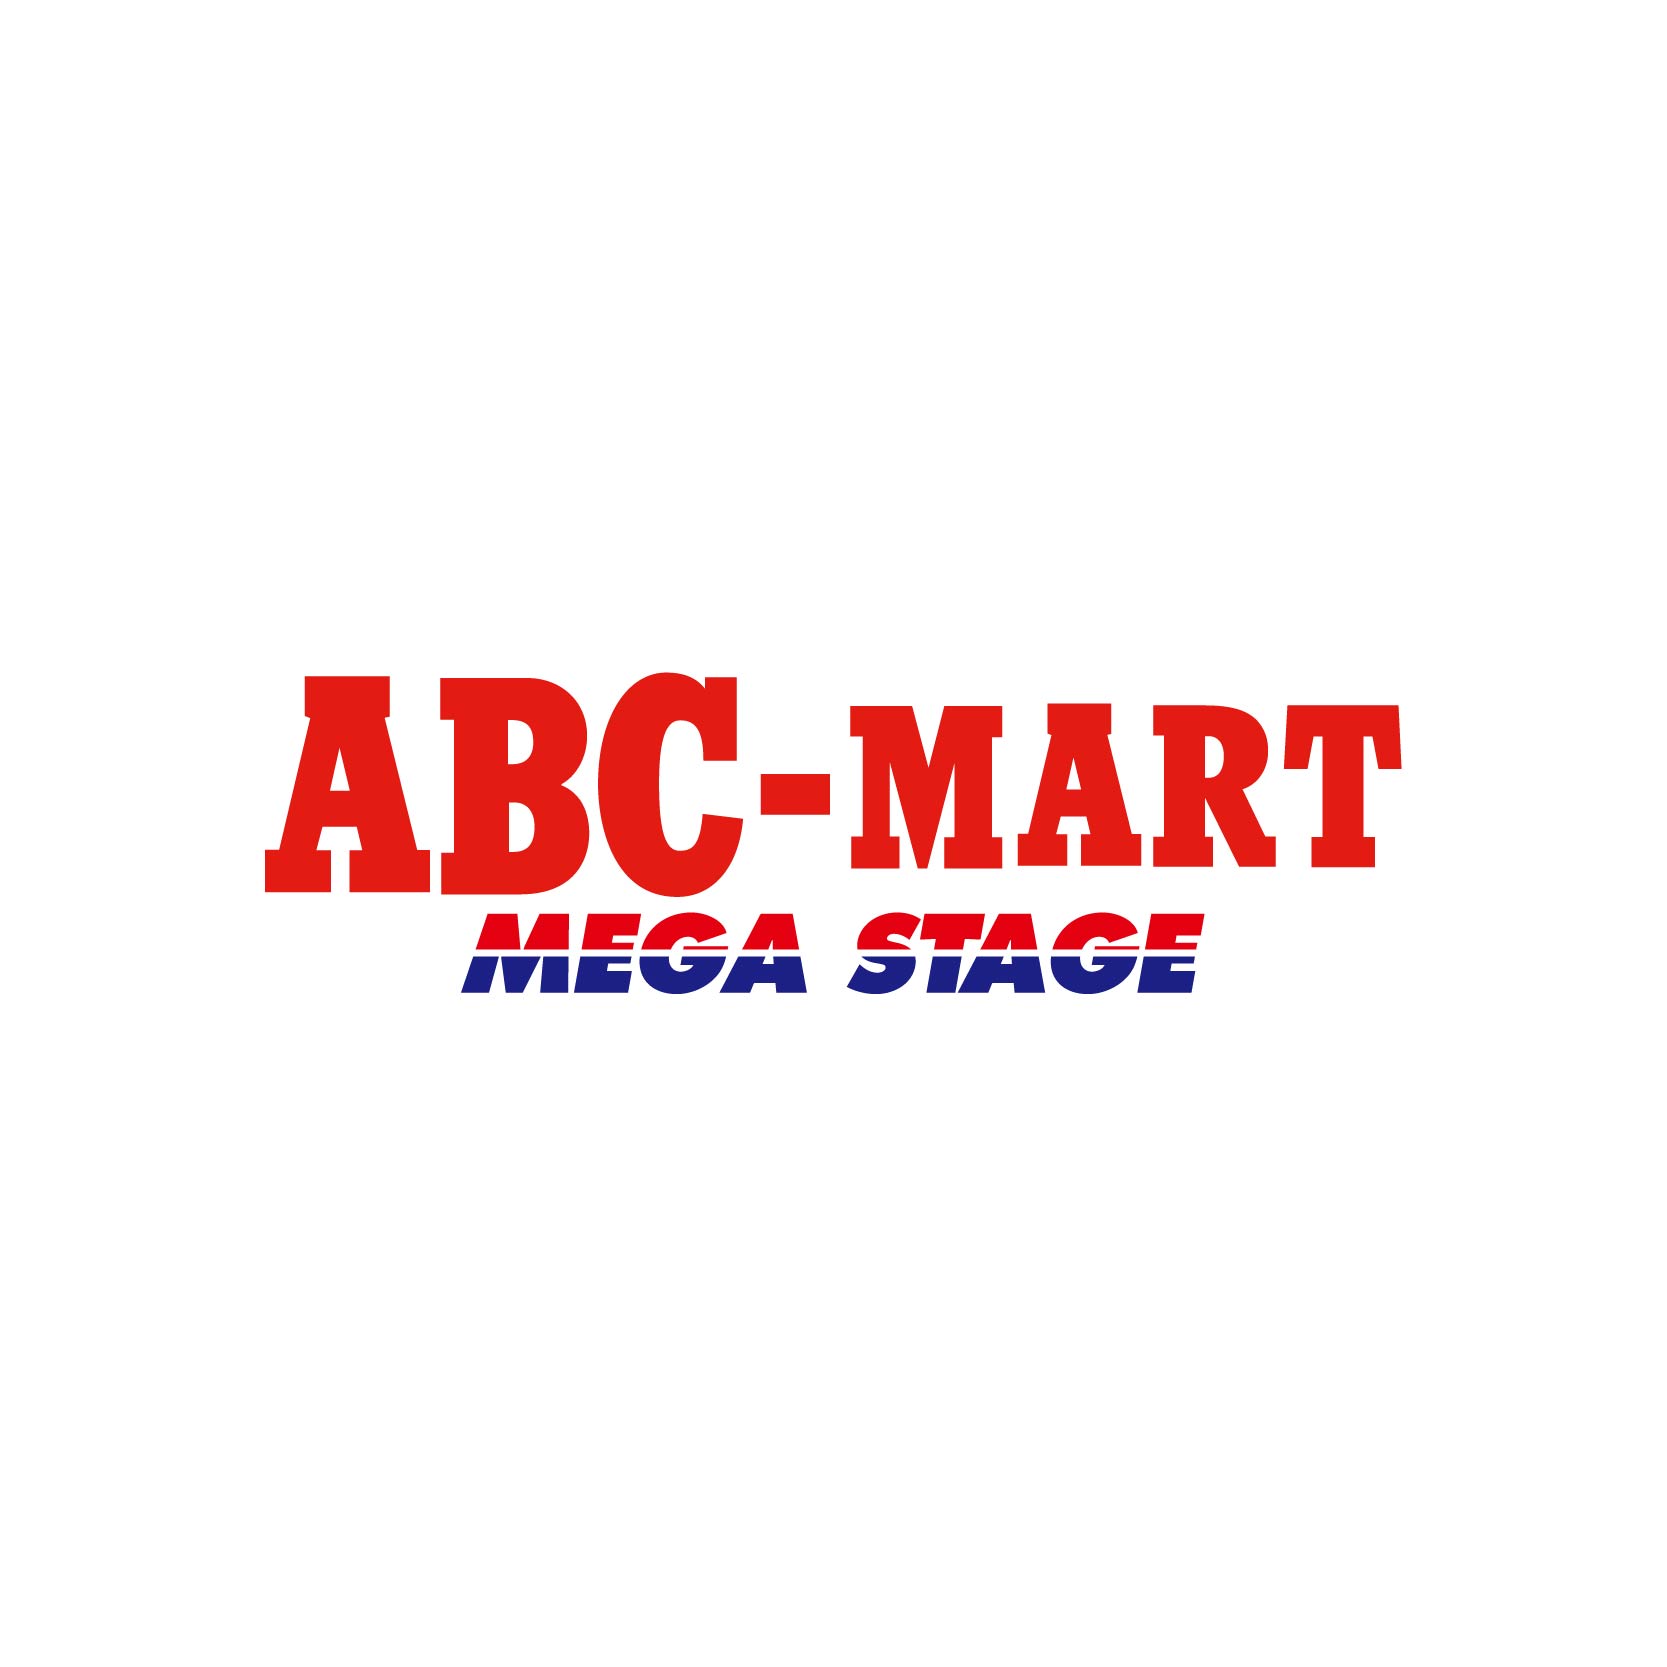 ABC MART MEGA STAGE